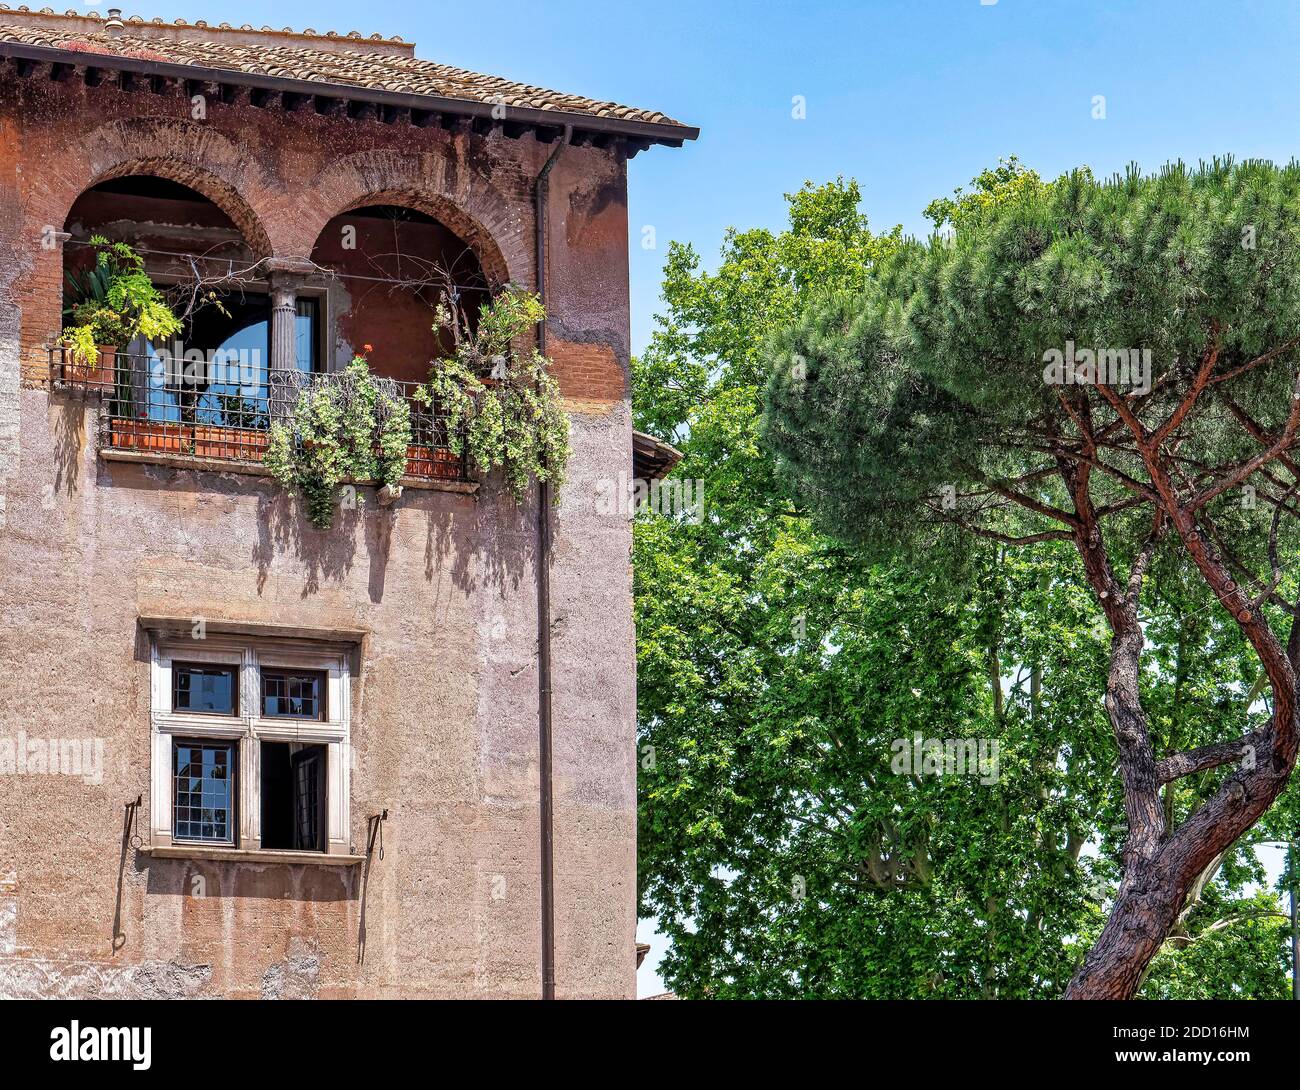 Curve doppie. Una bella terrazza coperta ad arco, piena di piante, si erge a fianco di uno dei famosi pini di Roma 'pino silvestre'. Foto Stock